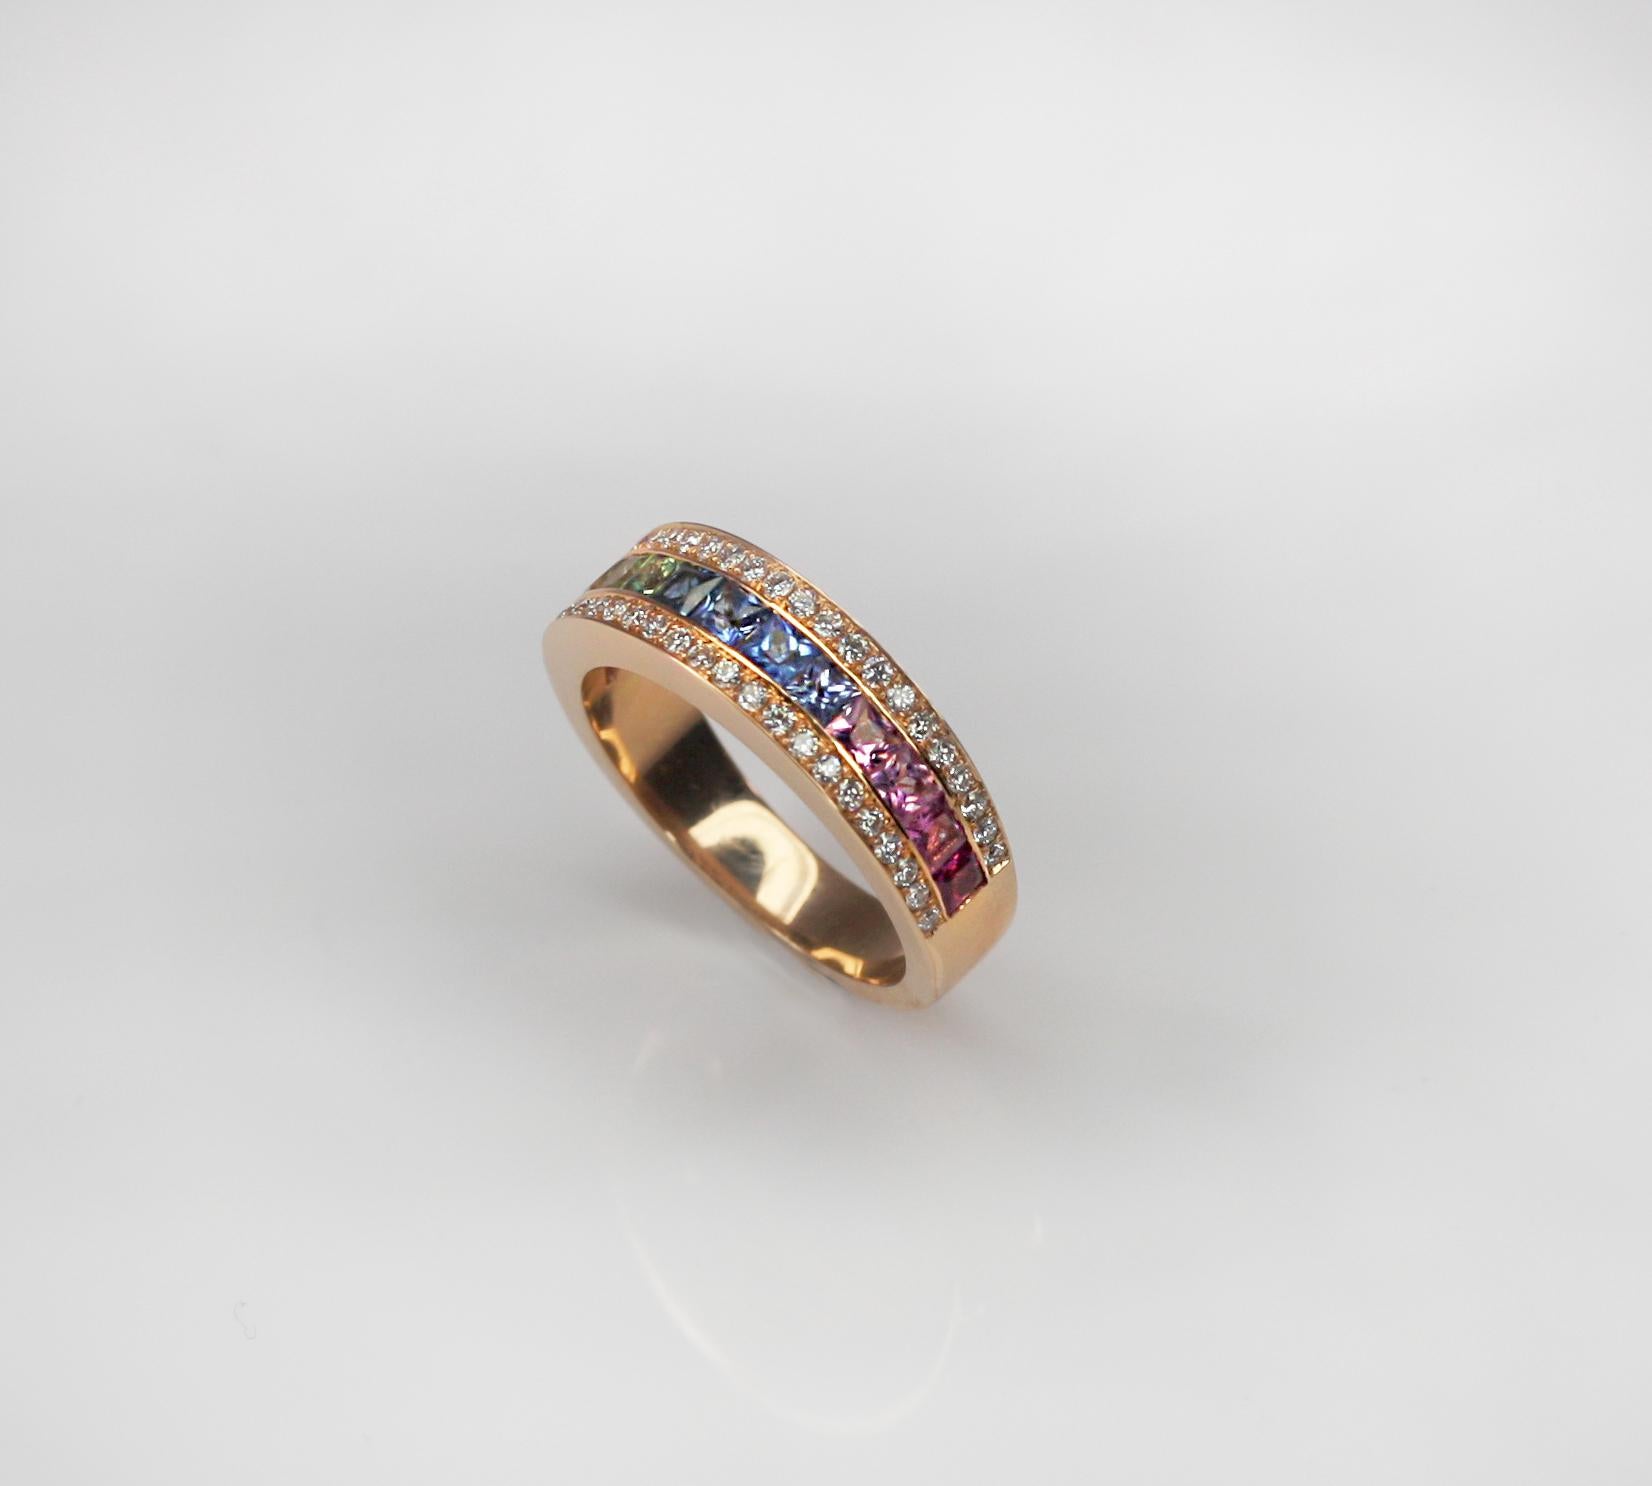 Dieser S. Georgios Designer Multicolor Band Ring in Rose Gold 18 Karat ist komplett handgefertigt mit mikroskopisch kleinen Kanalfassungen. Dieses wunderschöne Band besteht aus mehrfarbigen natürlichen Saphiren im Prinzessinnenschliff mit einem